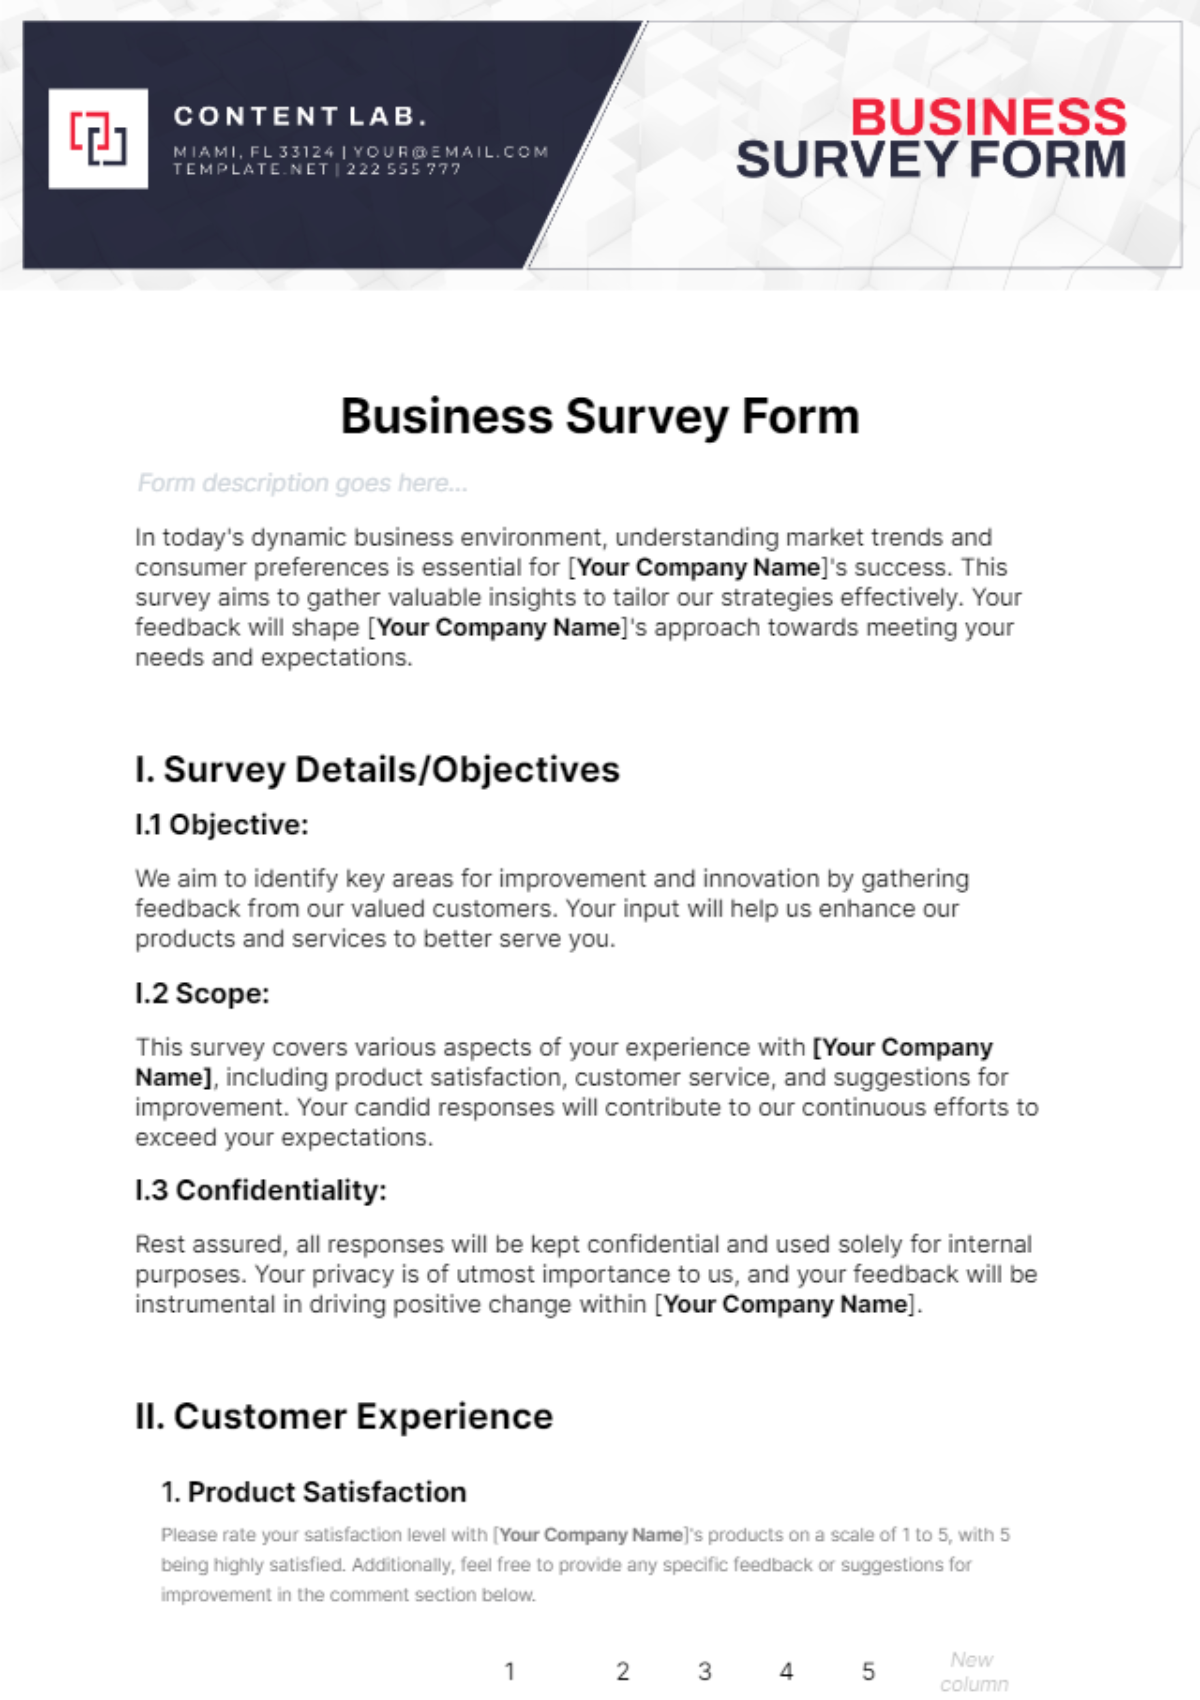 Business Survey Form Template